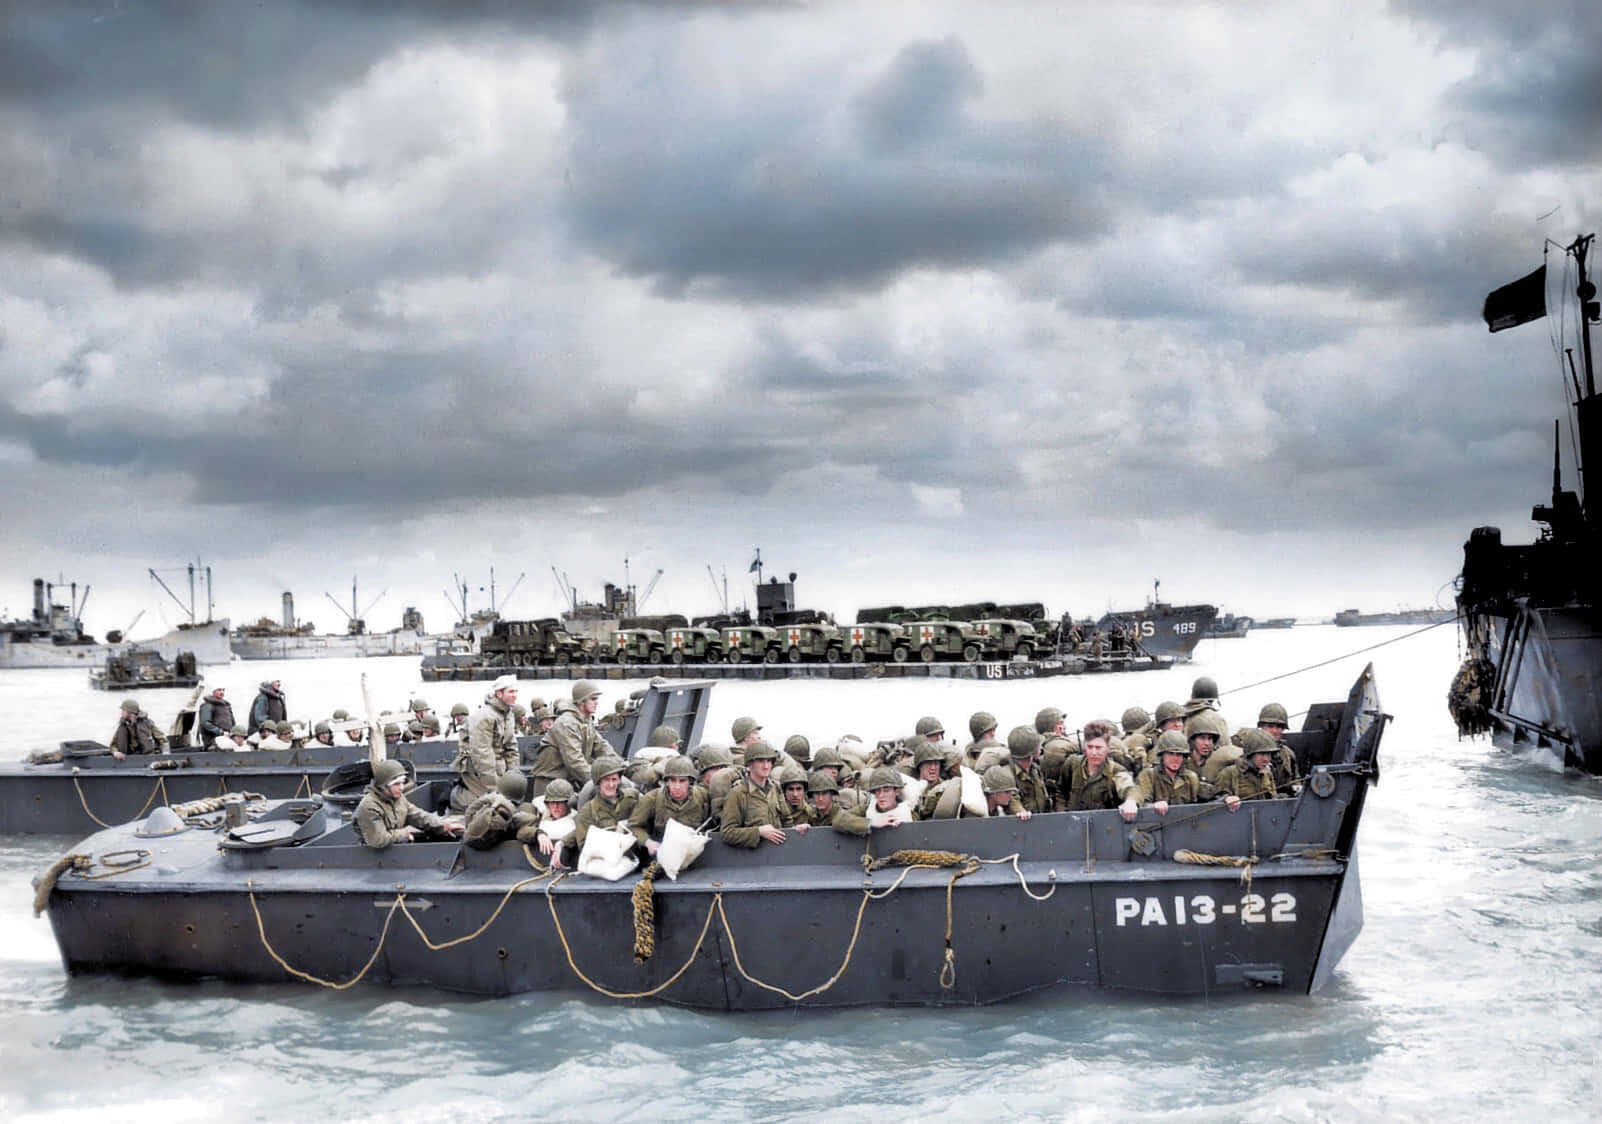 Ungruppo Di Soldati Su Barche In Acqua